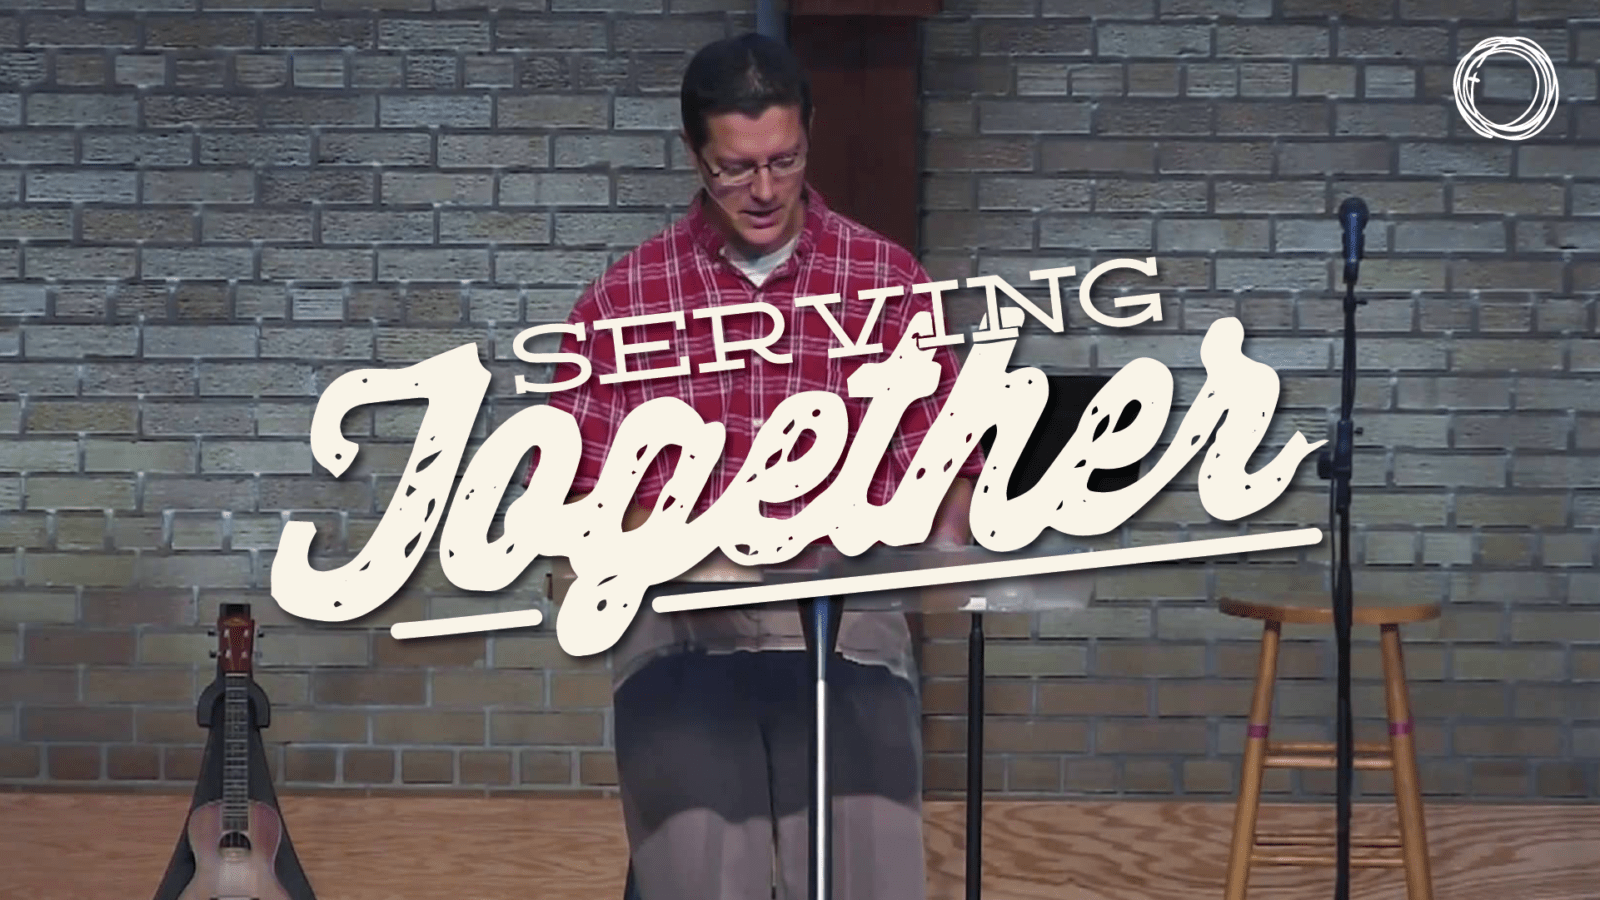 Serving Together